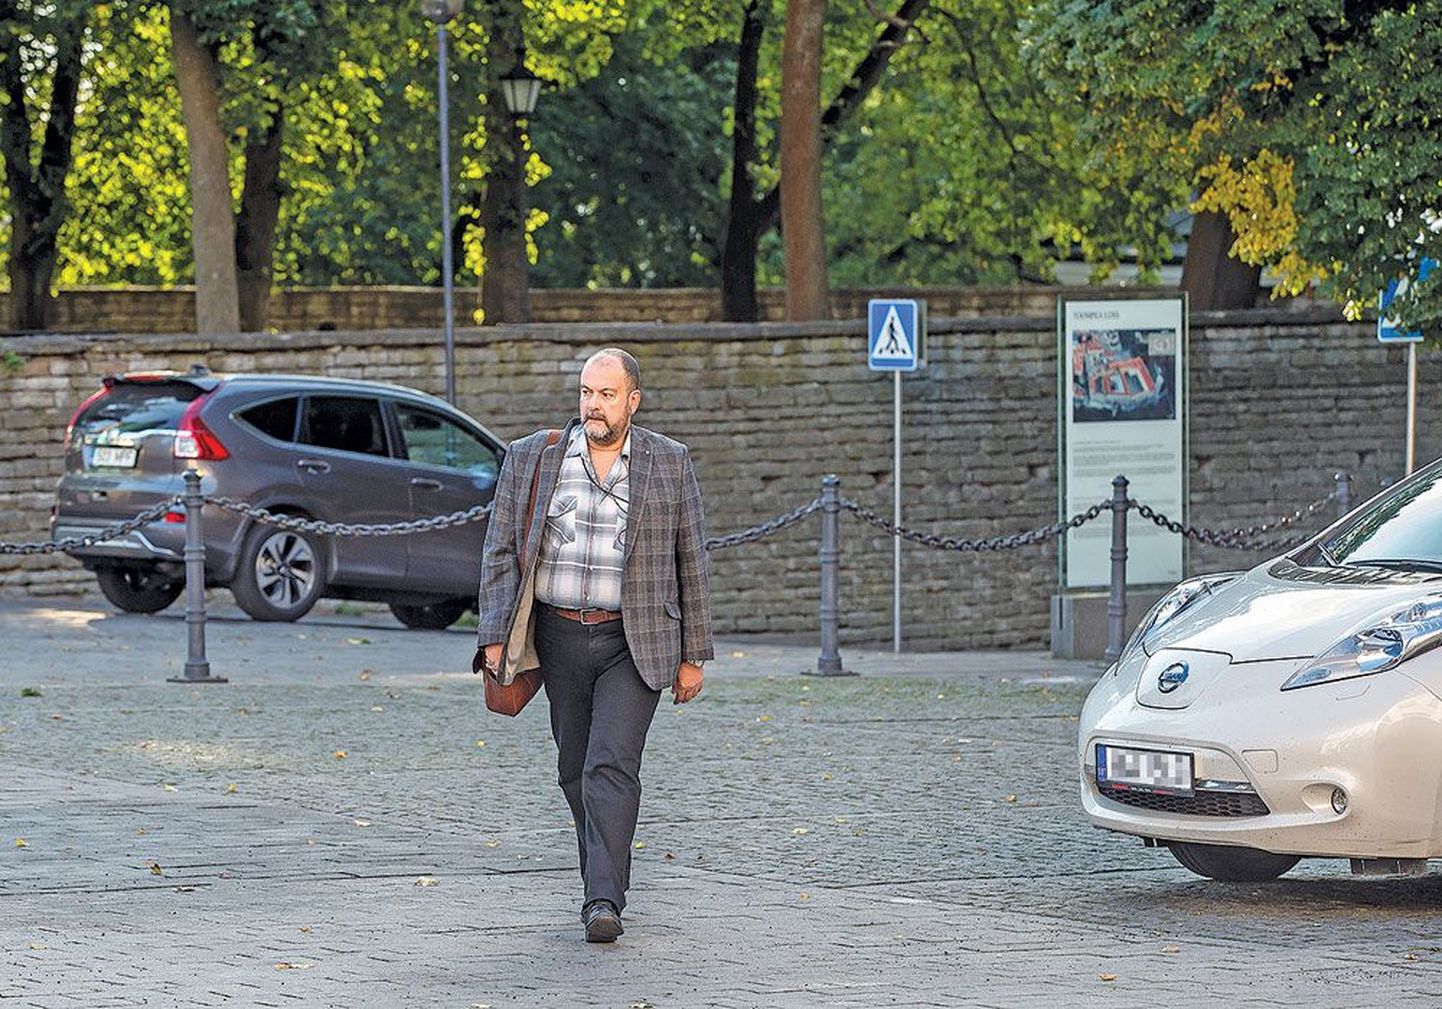 Депутат Михаил Стальнухин направляется на работу в Рийгикогу. На заднем плане виден предположительно тот самый автомобиль его жены, который был взят в лизинг и оплачивается с помощью депутатских компенсаций.